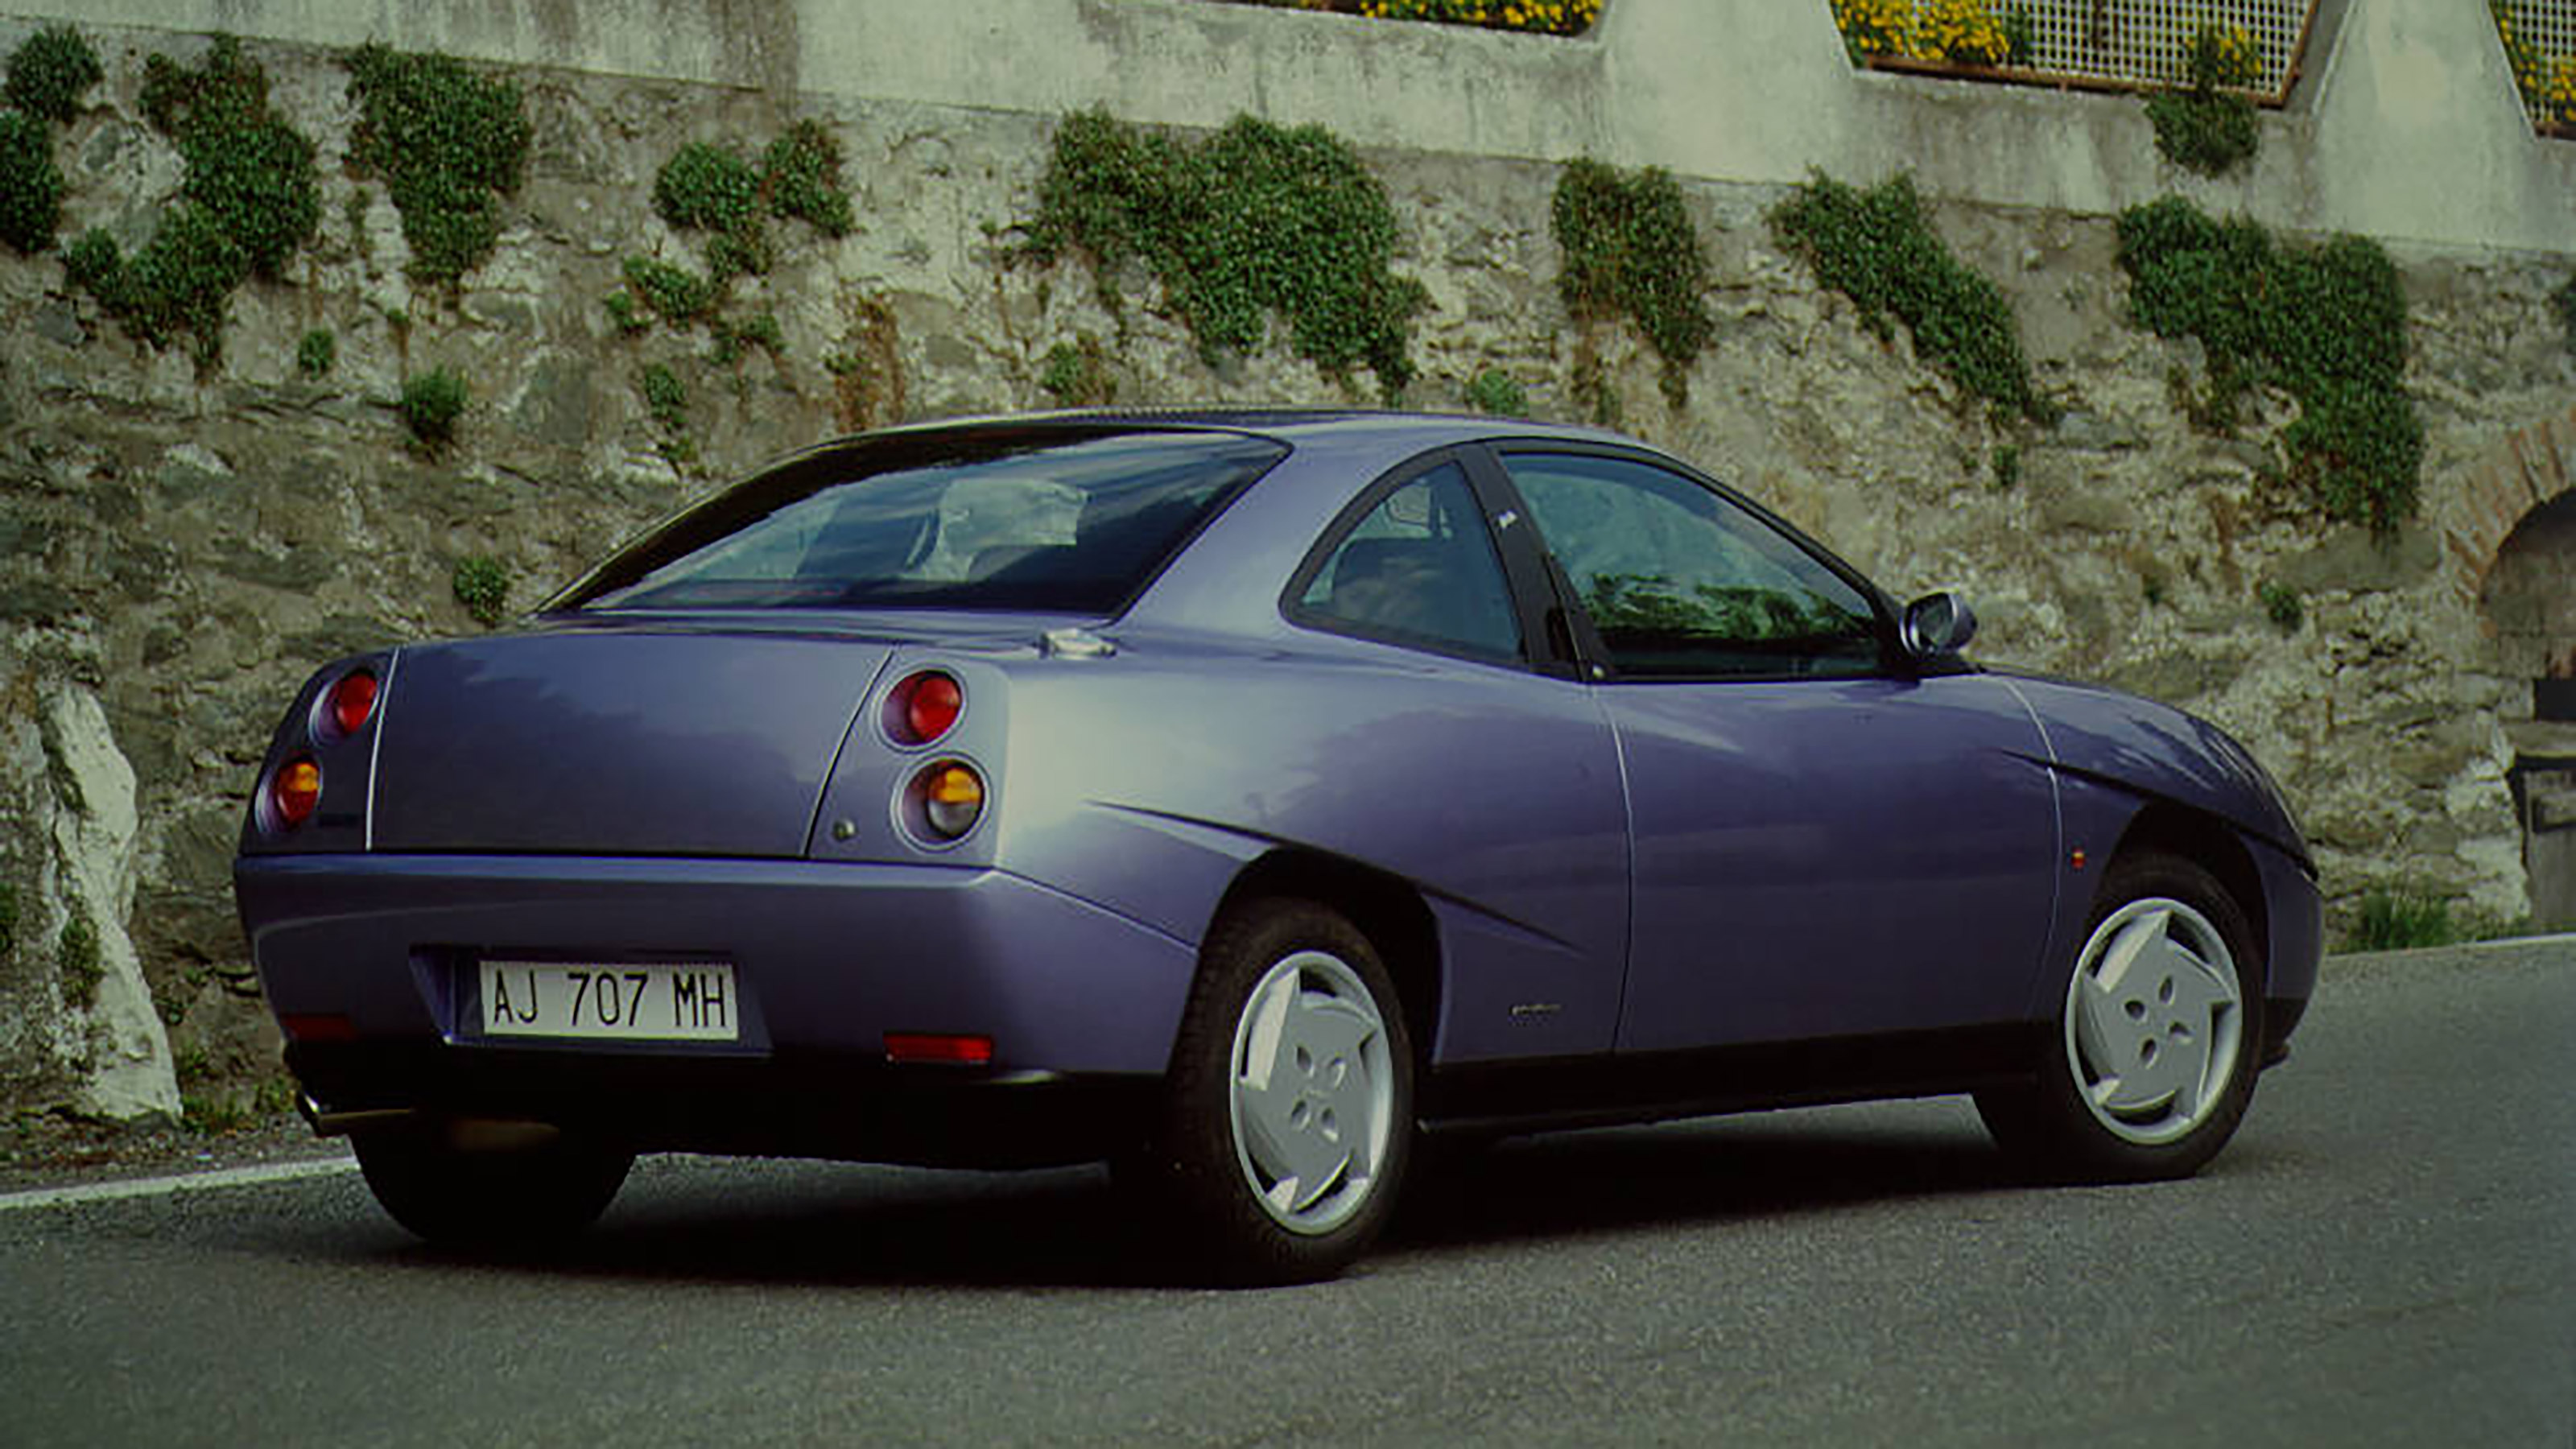 Fiat Coupé Prospekt 1997 2/97 Autoprospekt Auto brochure 1.8 16V 2.0 20V Turbo 